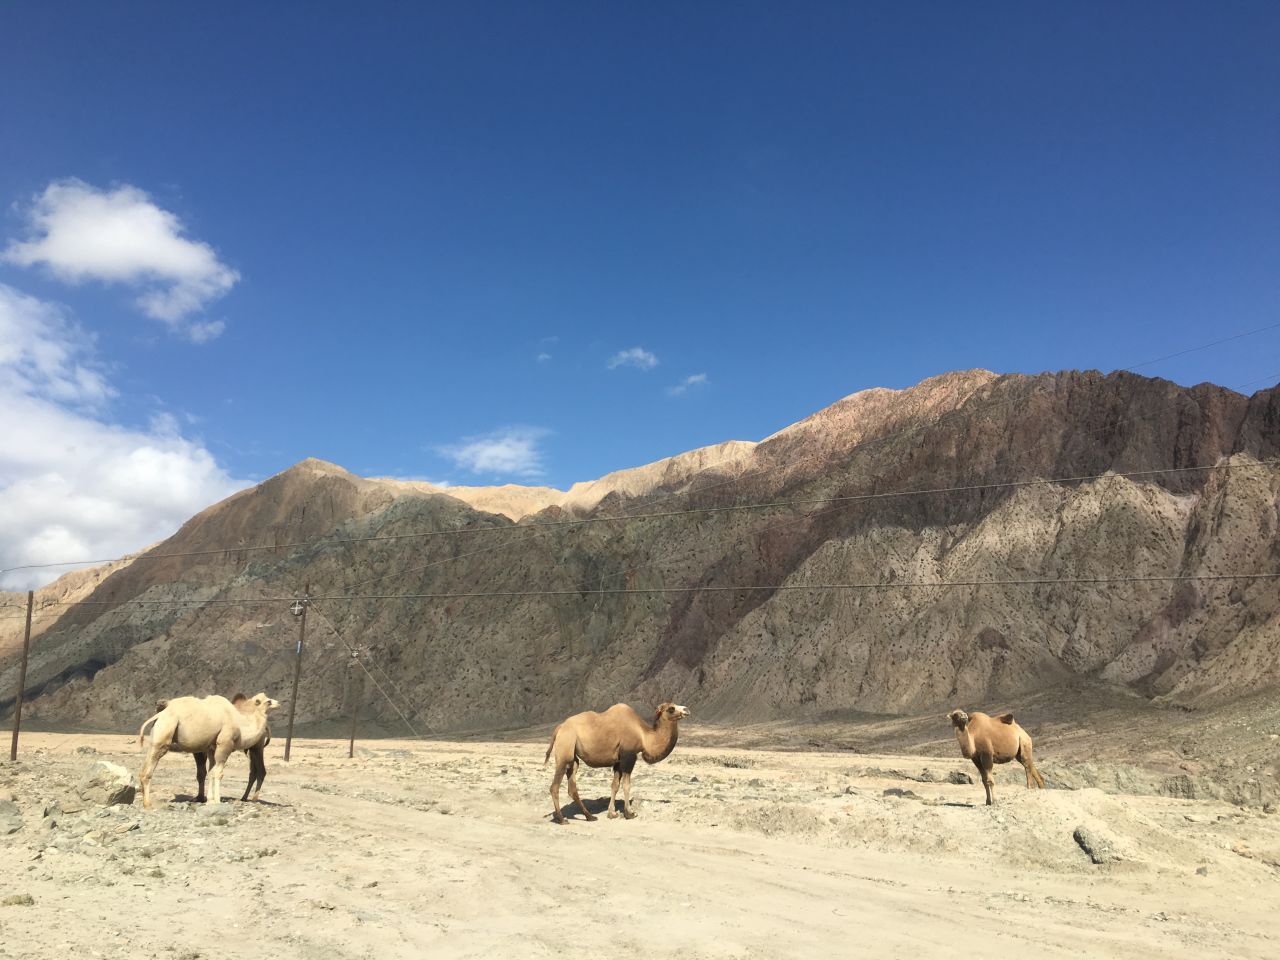 Camels along the Karakoram Highway.